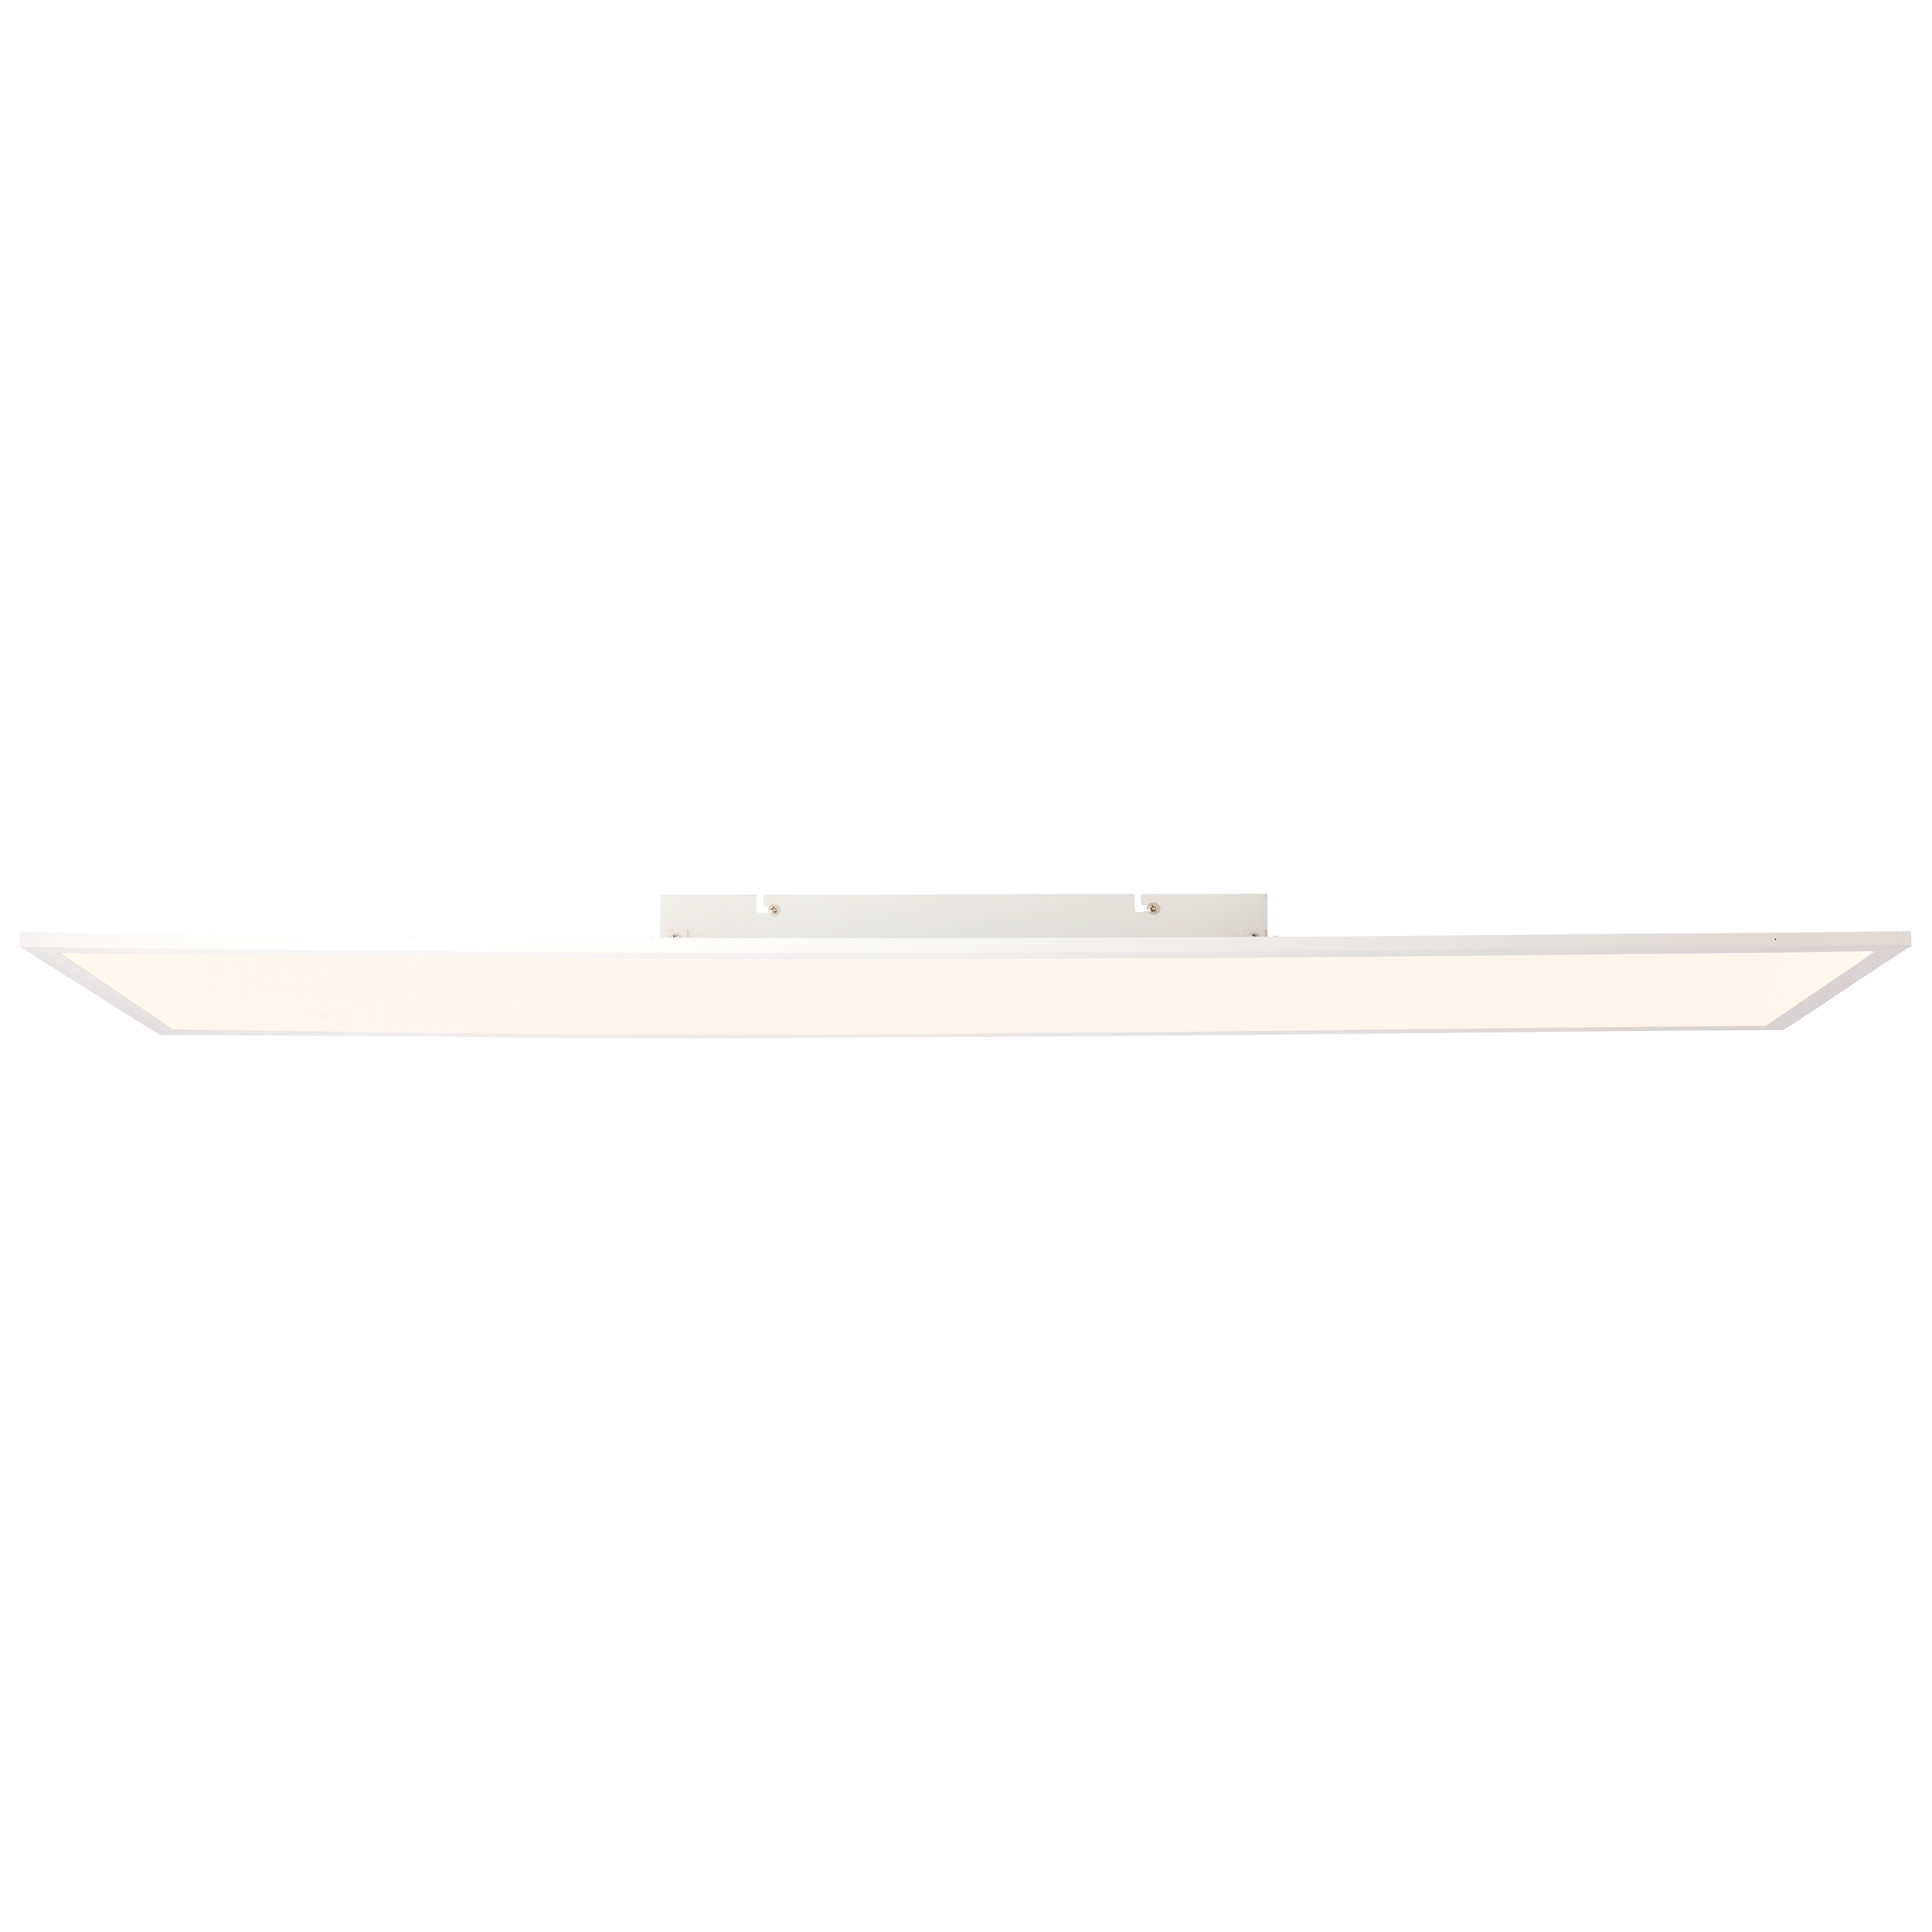 Buffi LED Deckenaufbau-Paneel 120x30cm weiß